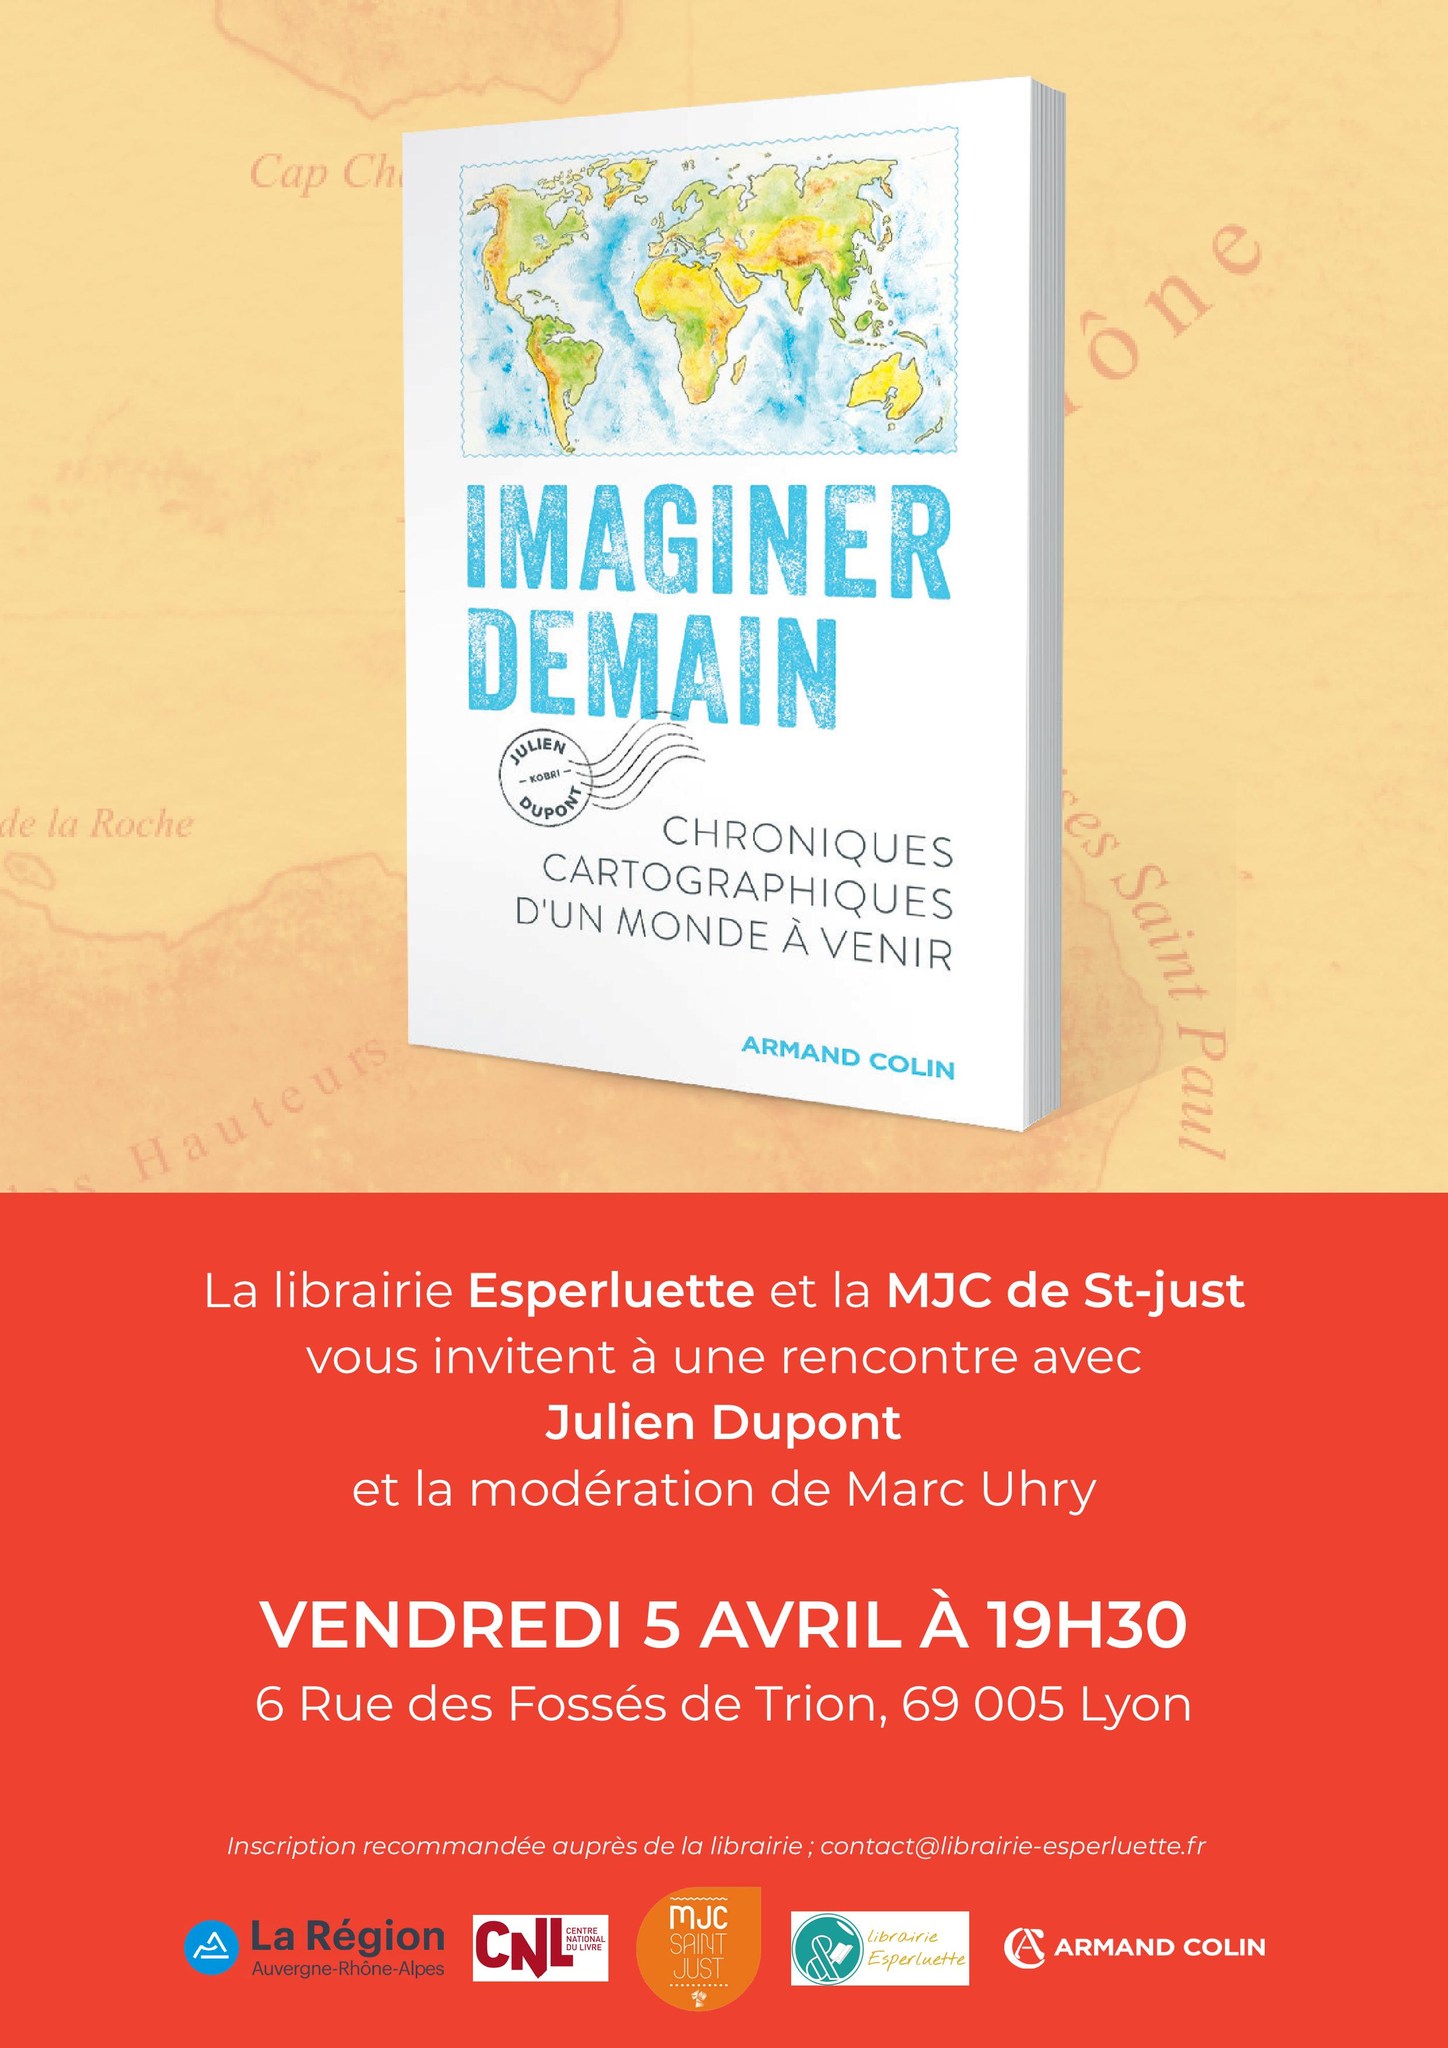 You are currently viewing Rencontre avec Julien Dupont, alias Kobri, auteur de « Imaginer demain – Chroniques cartographiques d’un monde à venir», Ed. Armand Colin.